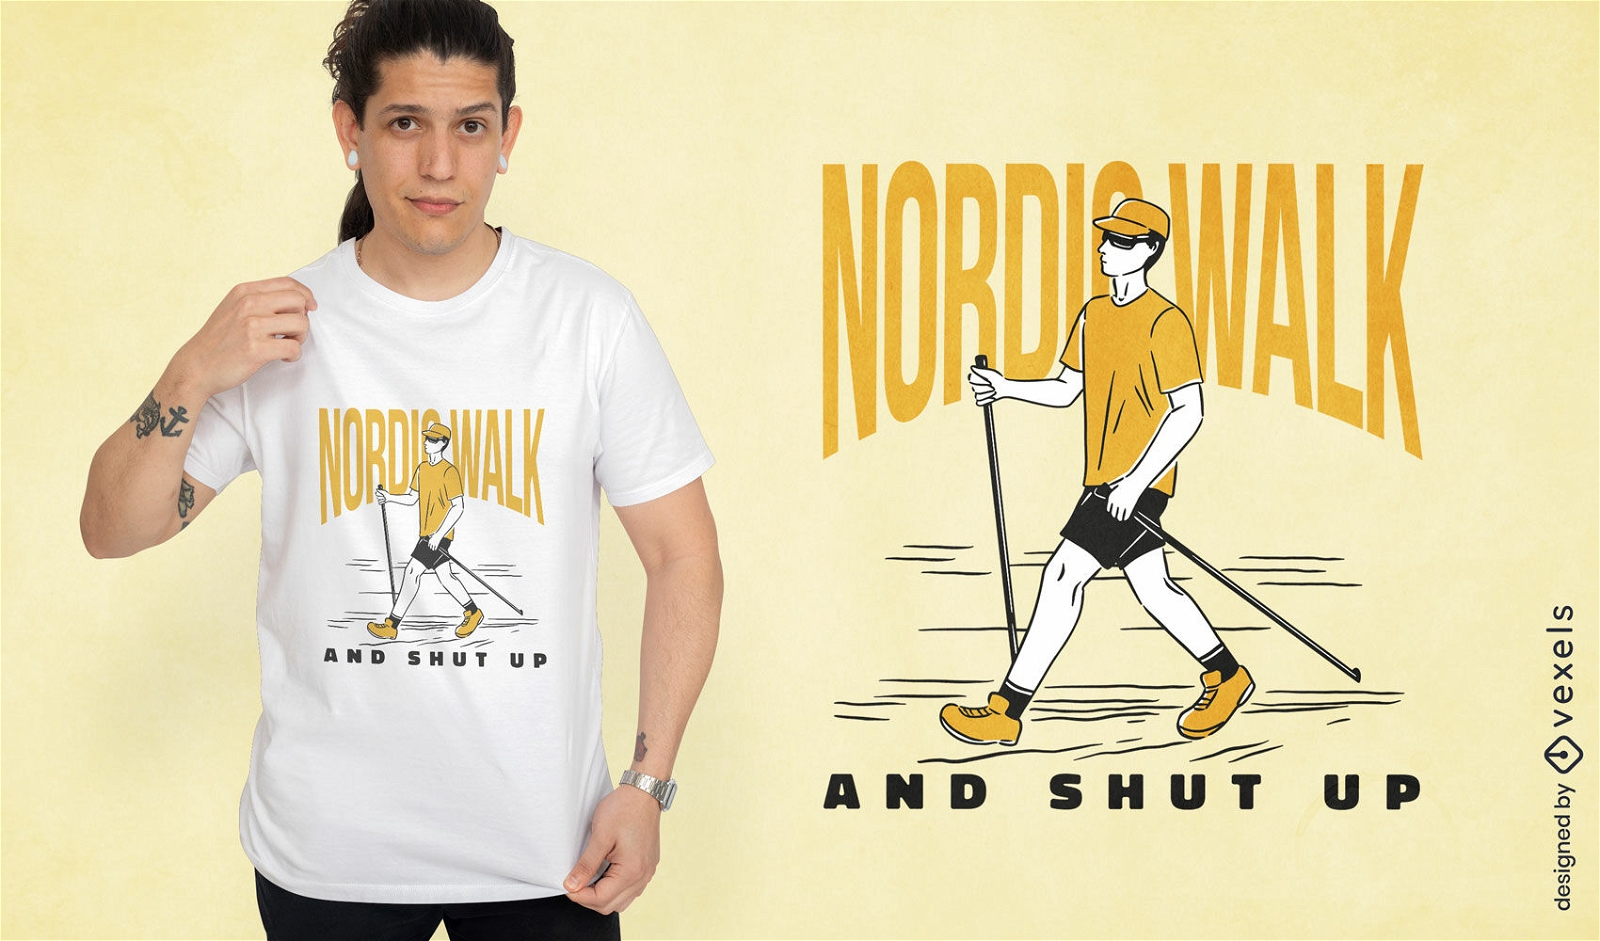 Diseño de camiseta de hobby de marcha nórdica.